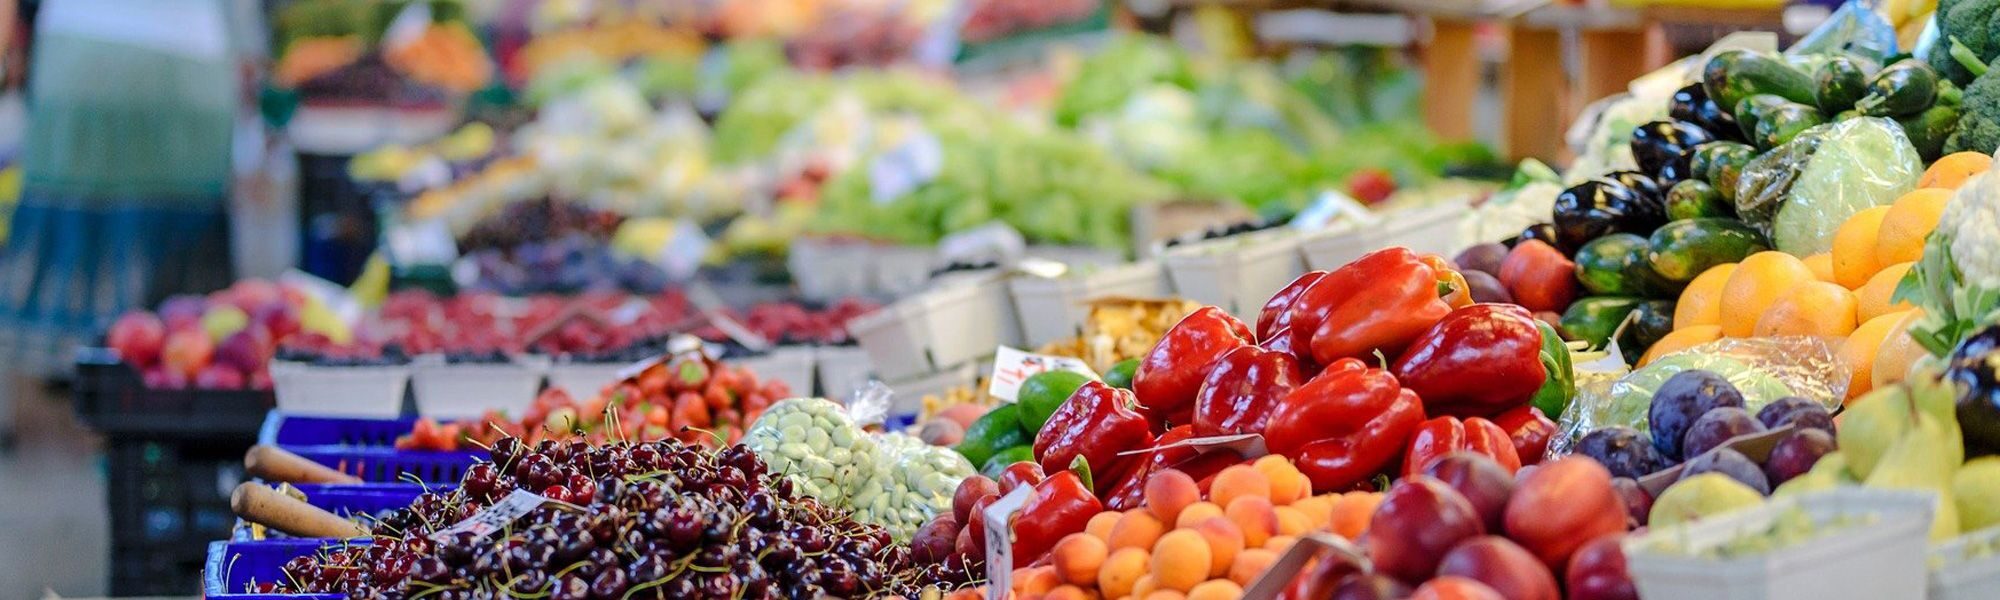 fruits et légumes étal marché